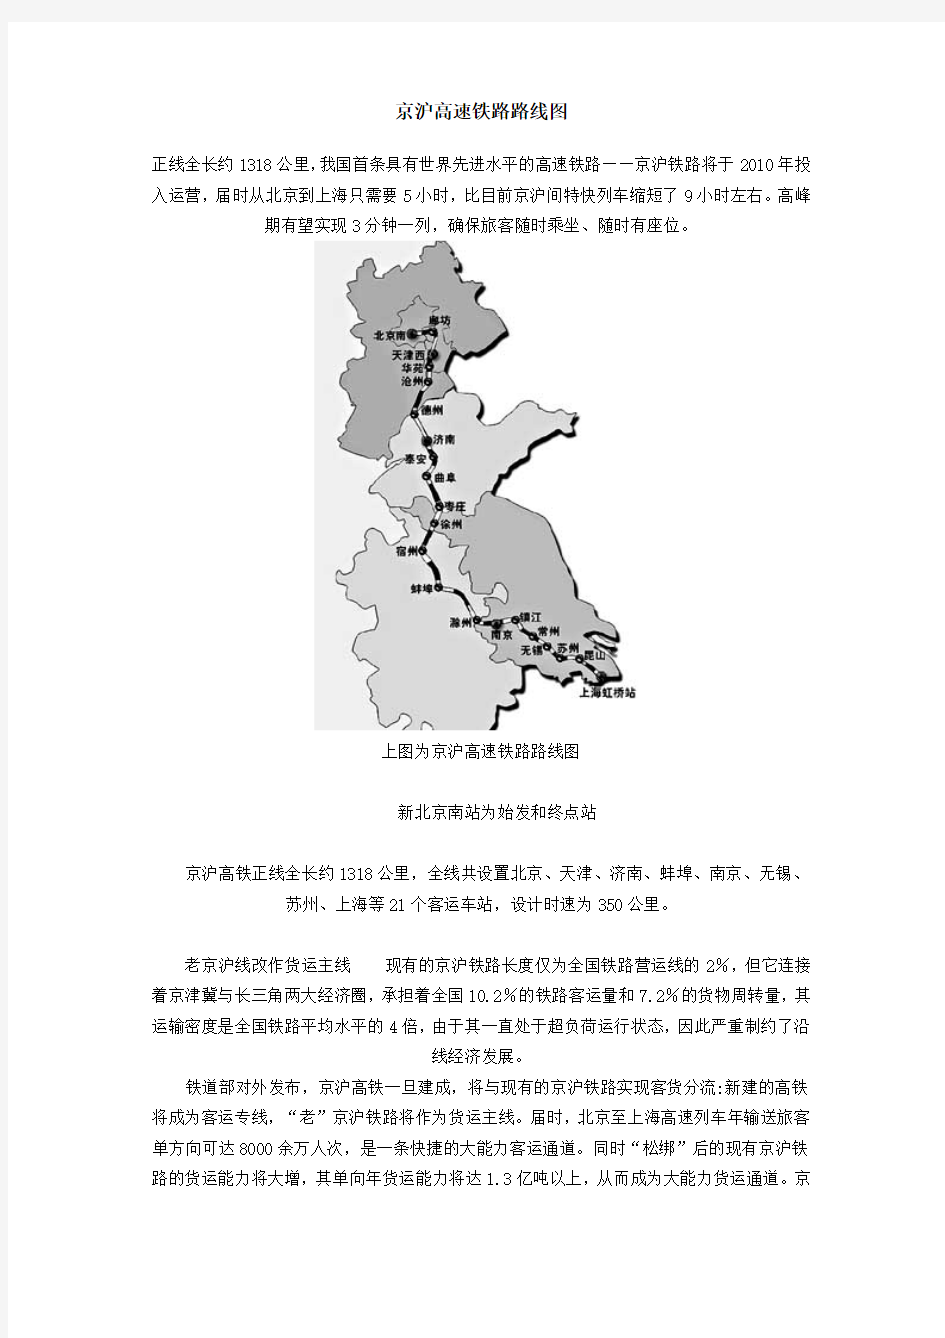 京沪高速铁路路线图